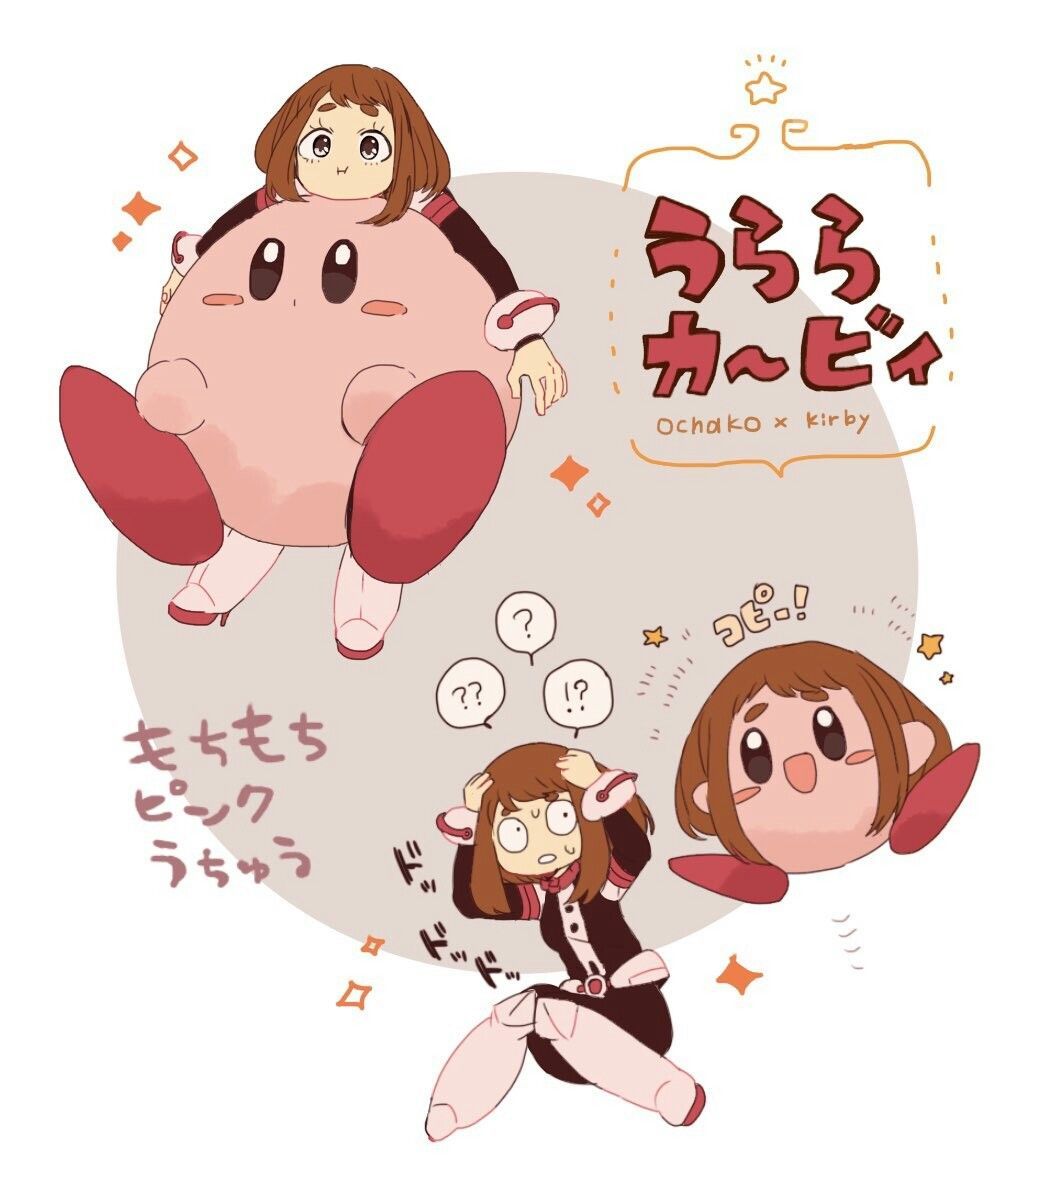 Ochako x Kirby. One punch man anime, My hero, Kirby